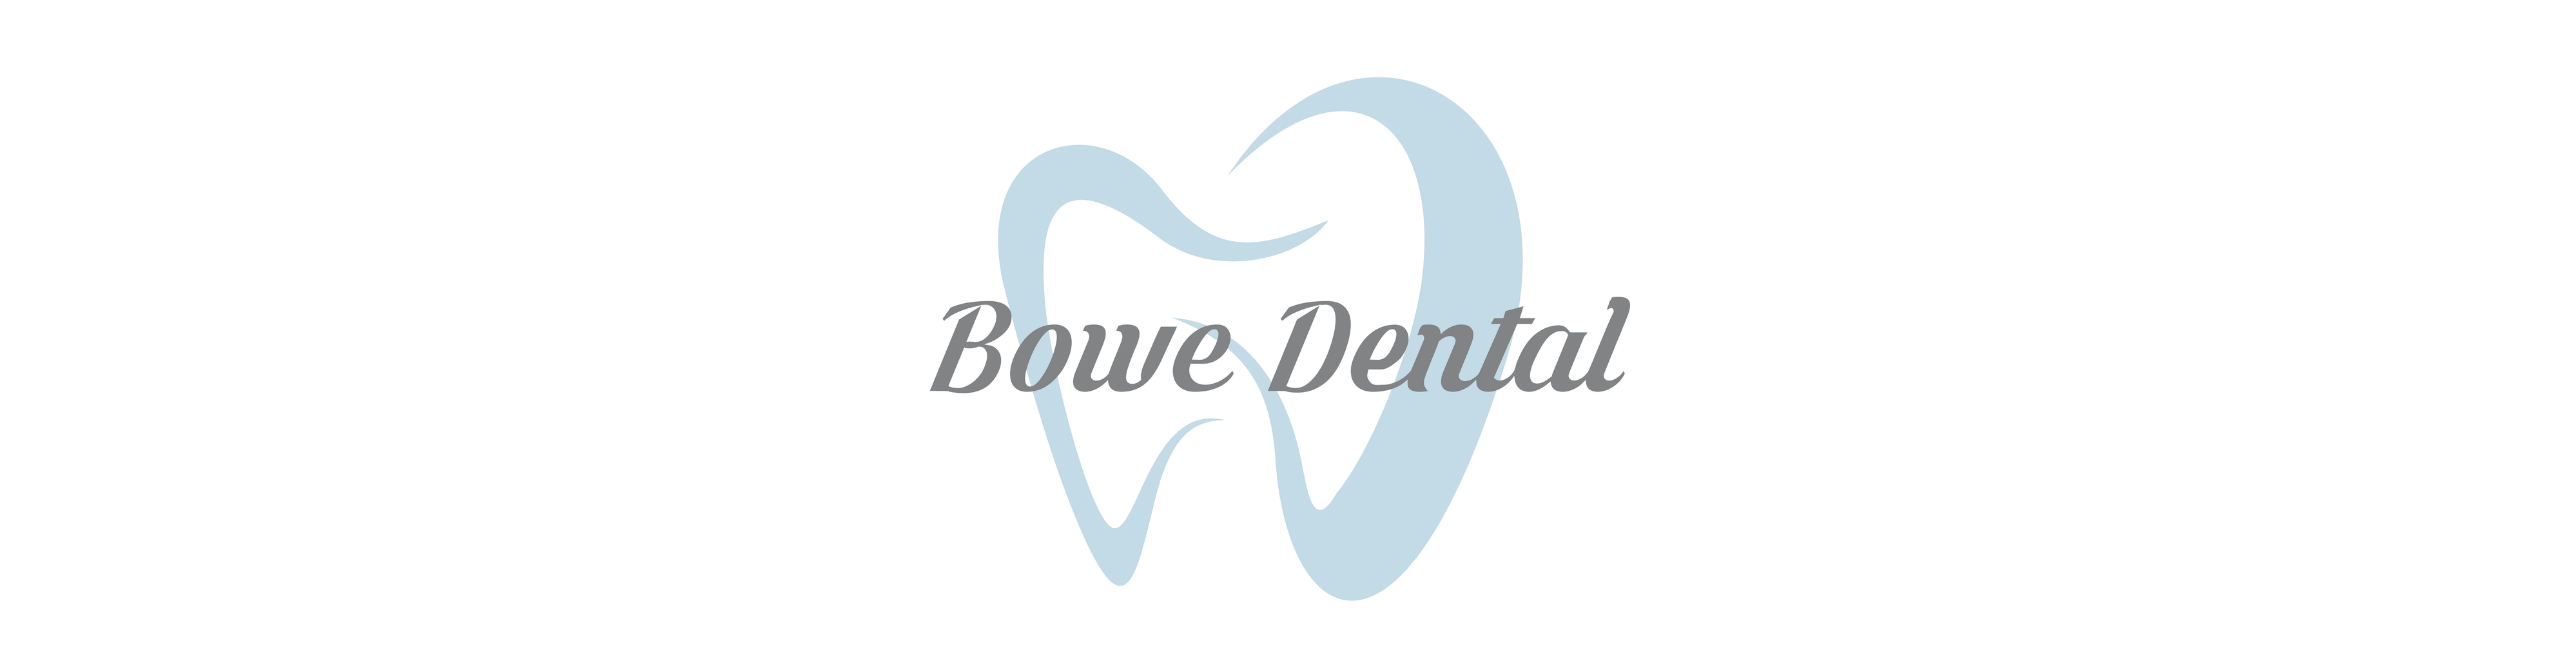 bowe-dental